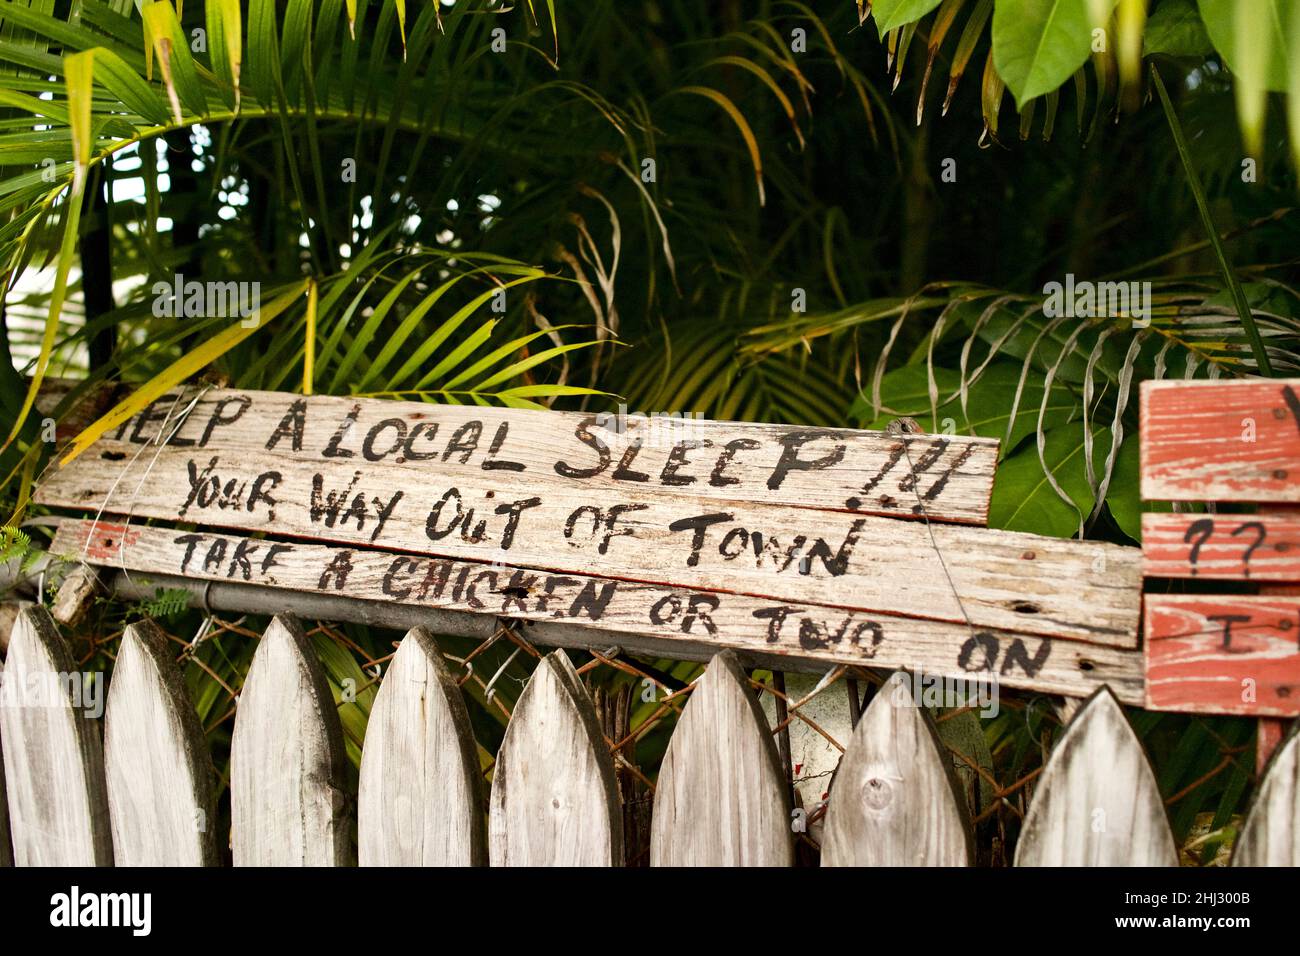 Panneau humoristique à Key West, Floride, FL USA.Destination de vacances sur l’île “Take a Chicken”. Banque D'Images